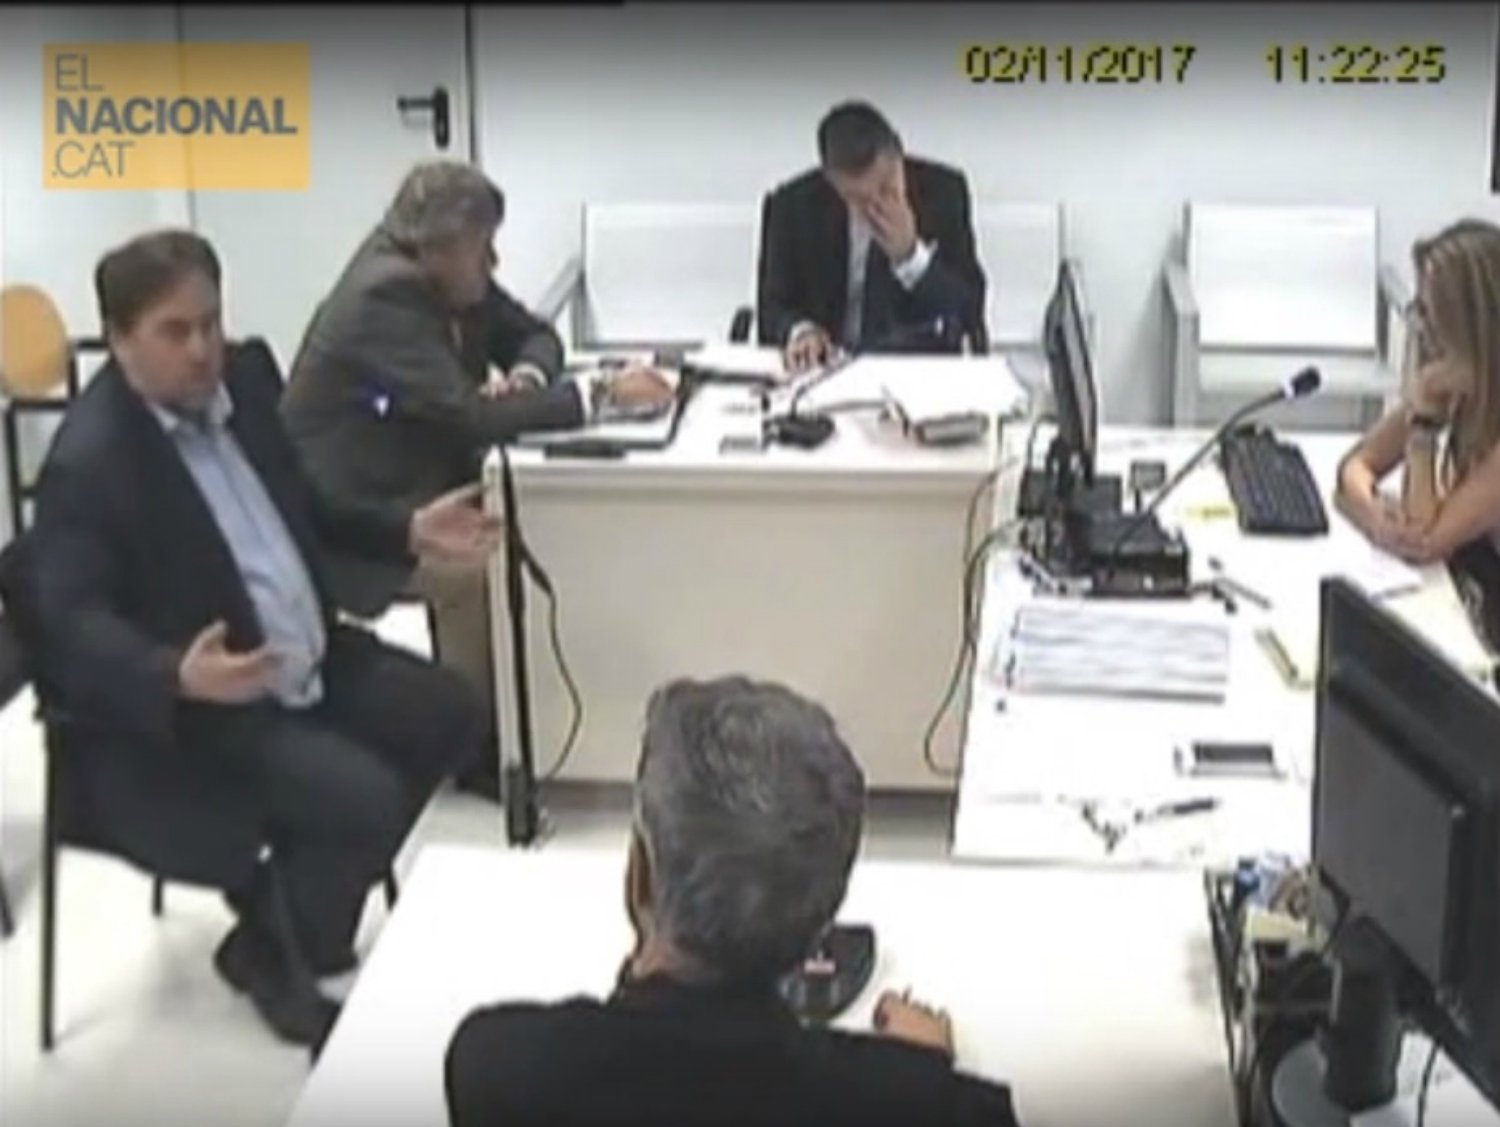 VÍDEO: Las declaraciones de Junqueras y Forn en la Audiencia Nacional, un año después